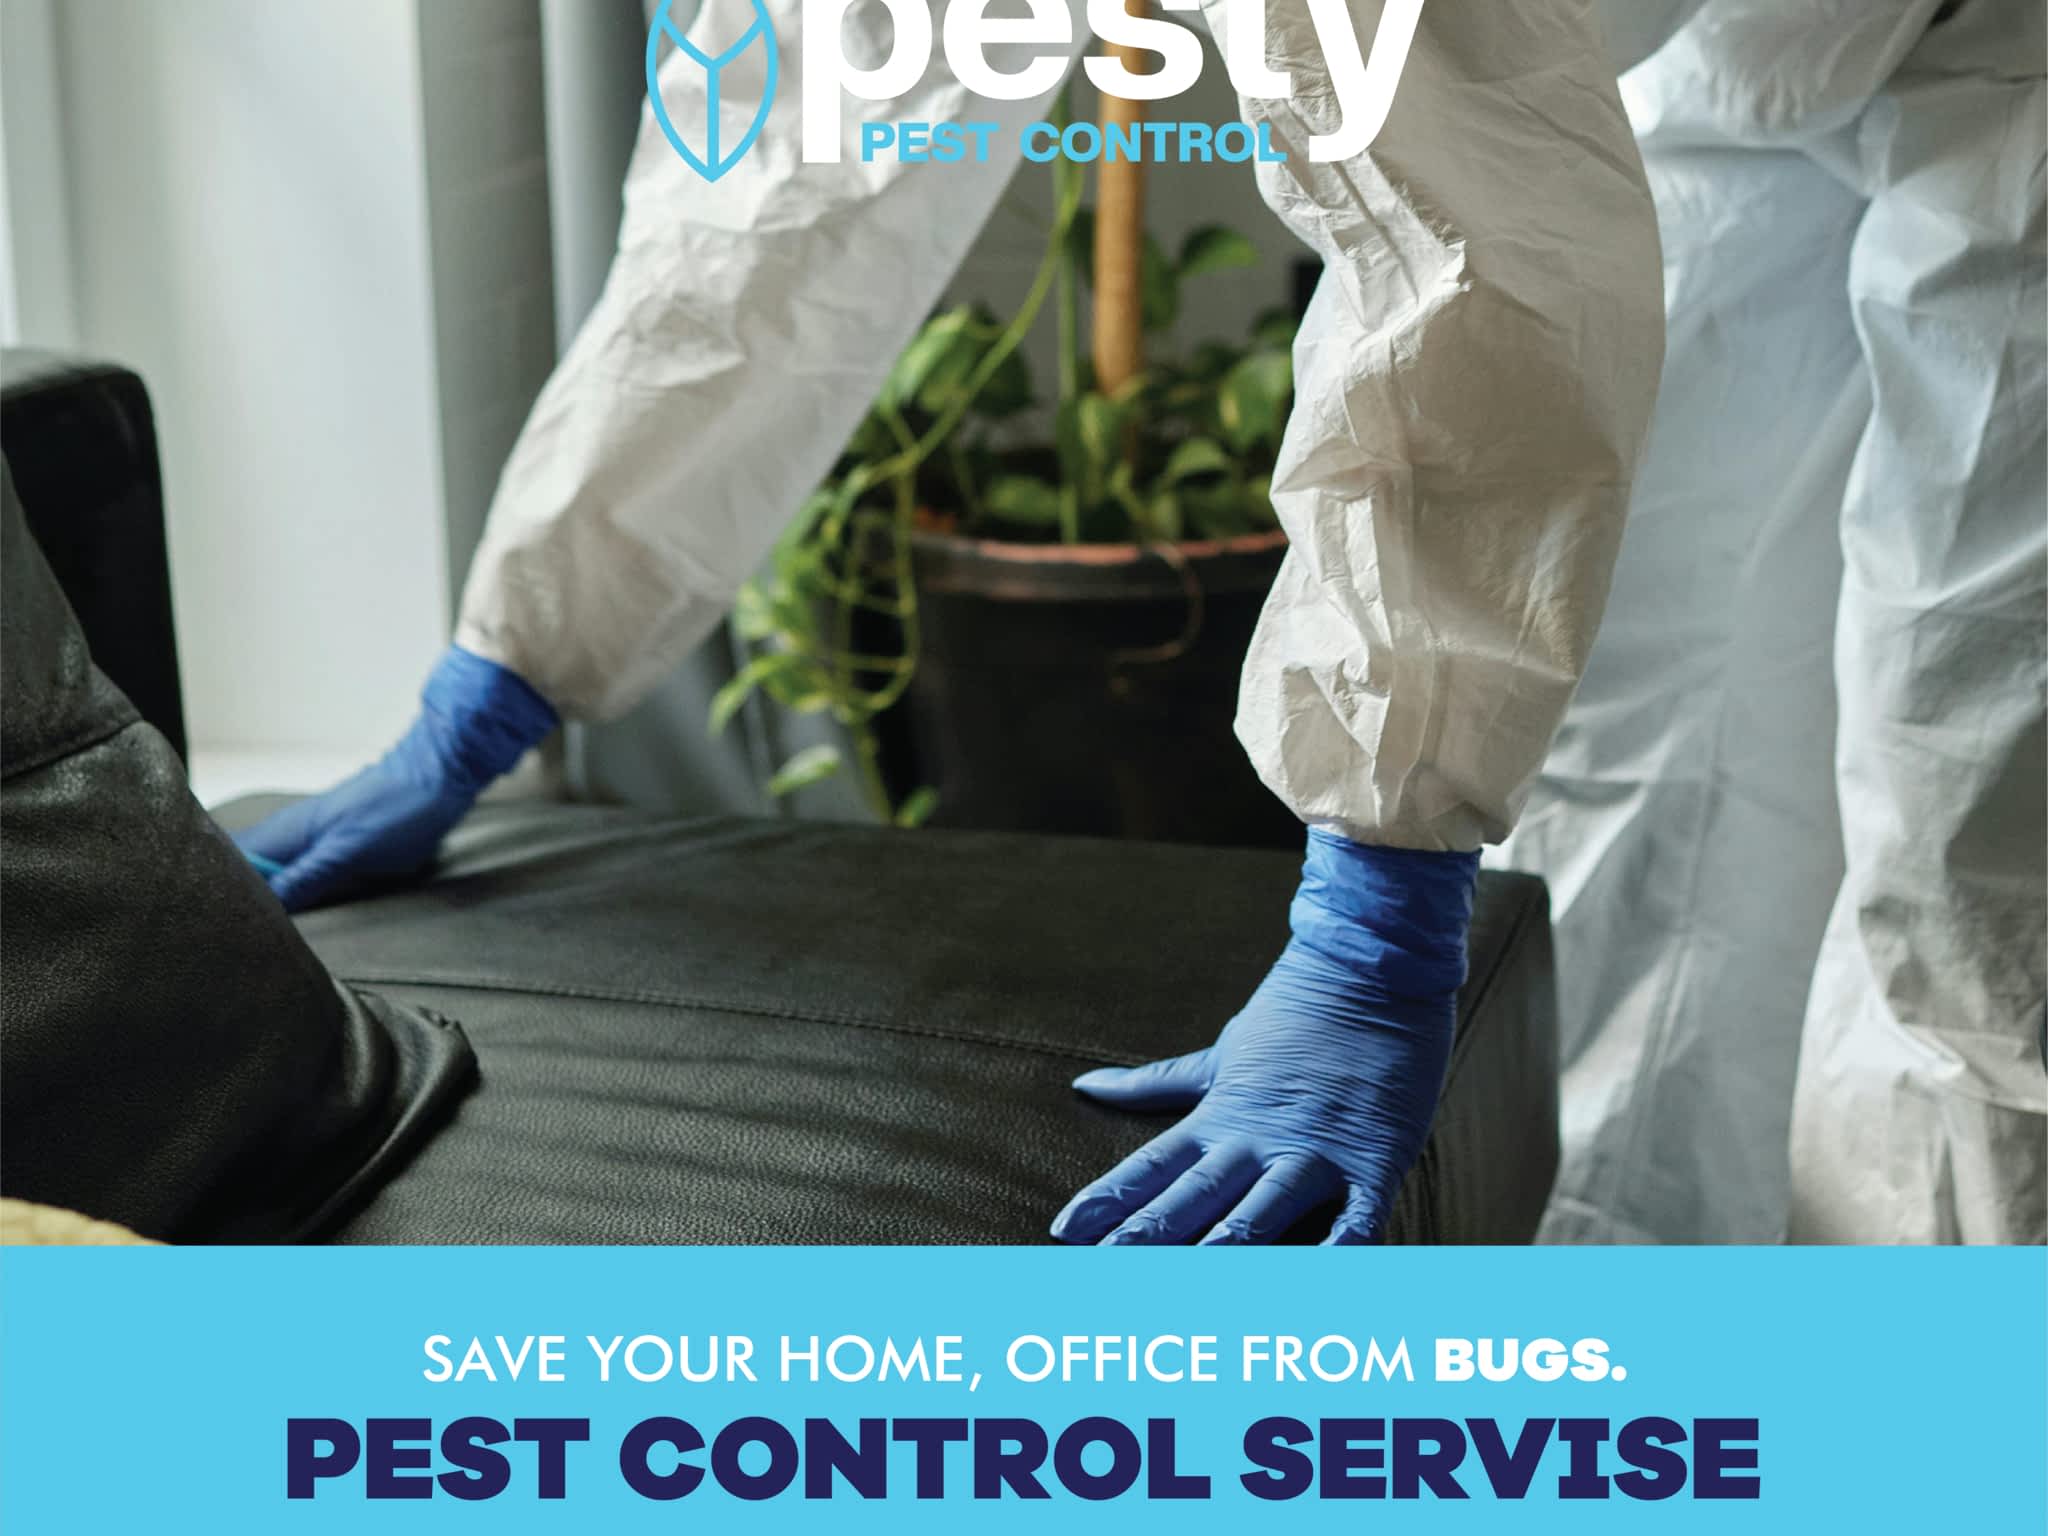 photo PESTY Pest Control